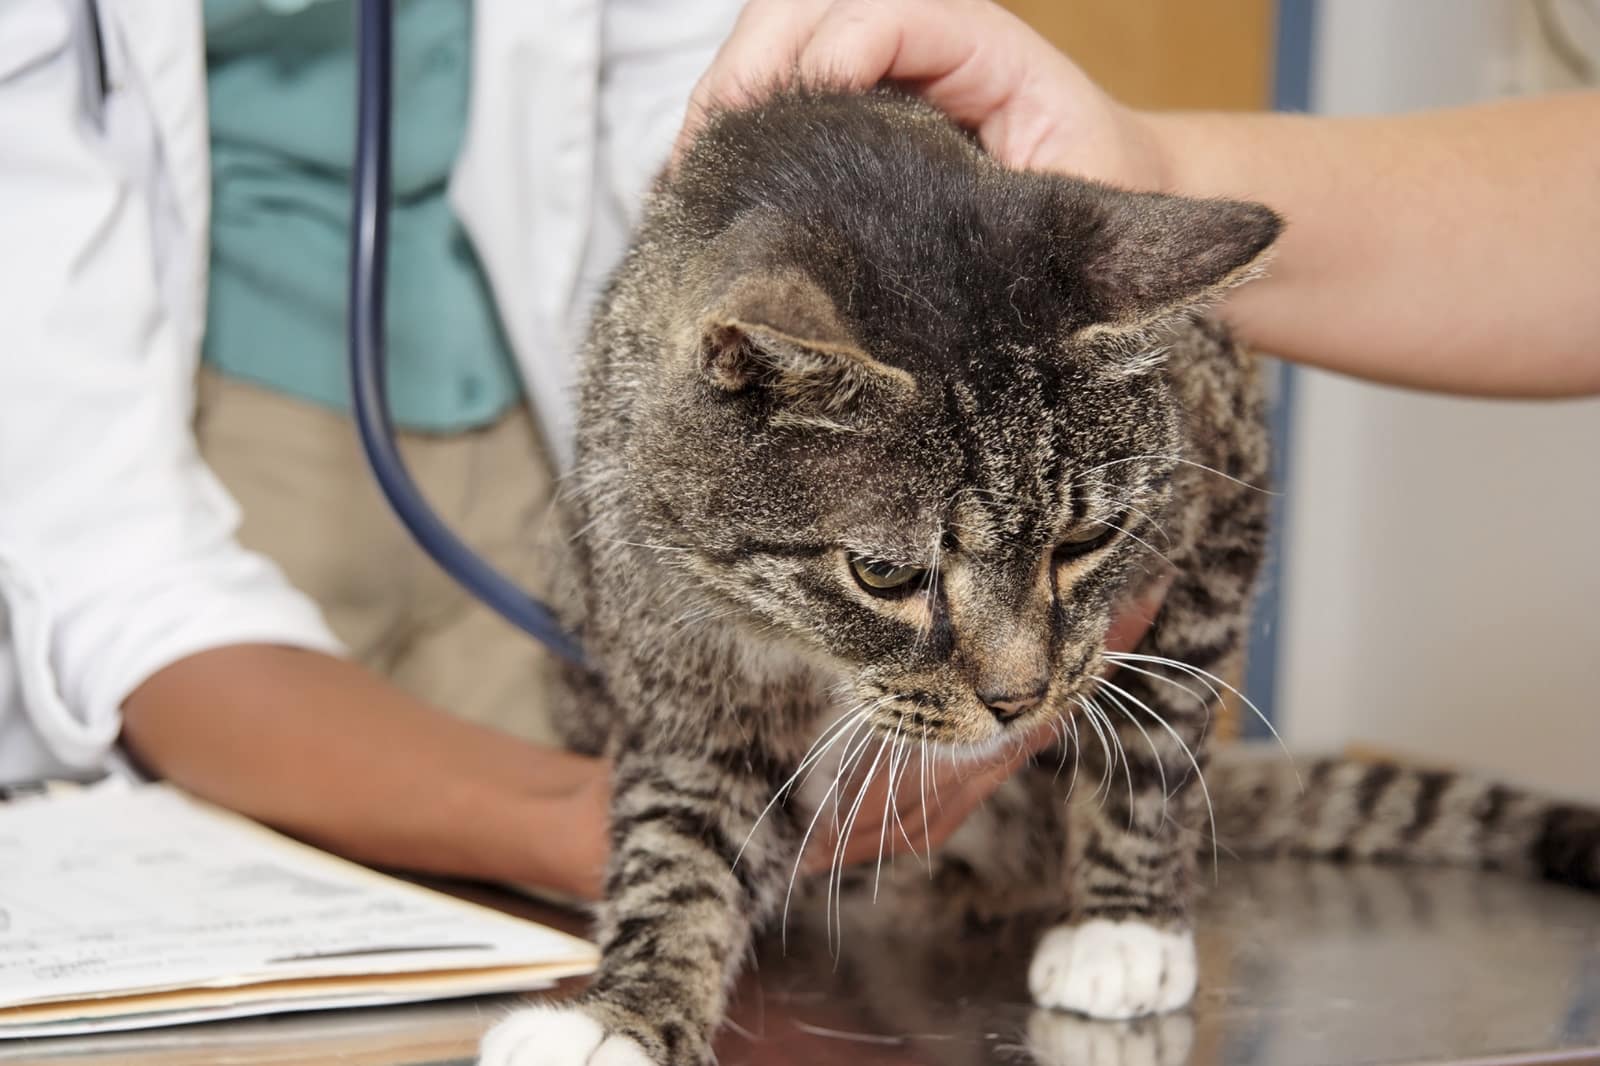 Что может означать наличие крови в моче у кота: лечение в домашних условиях